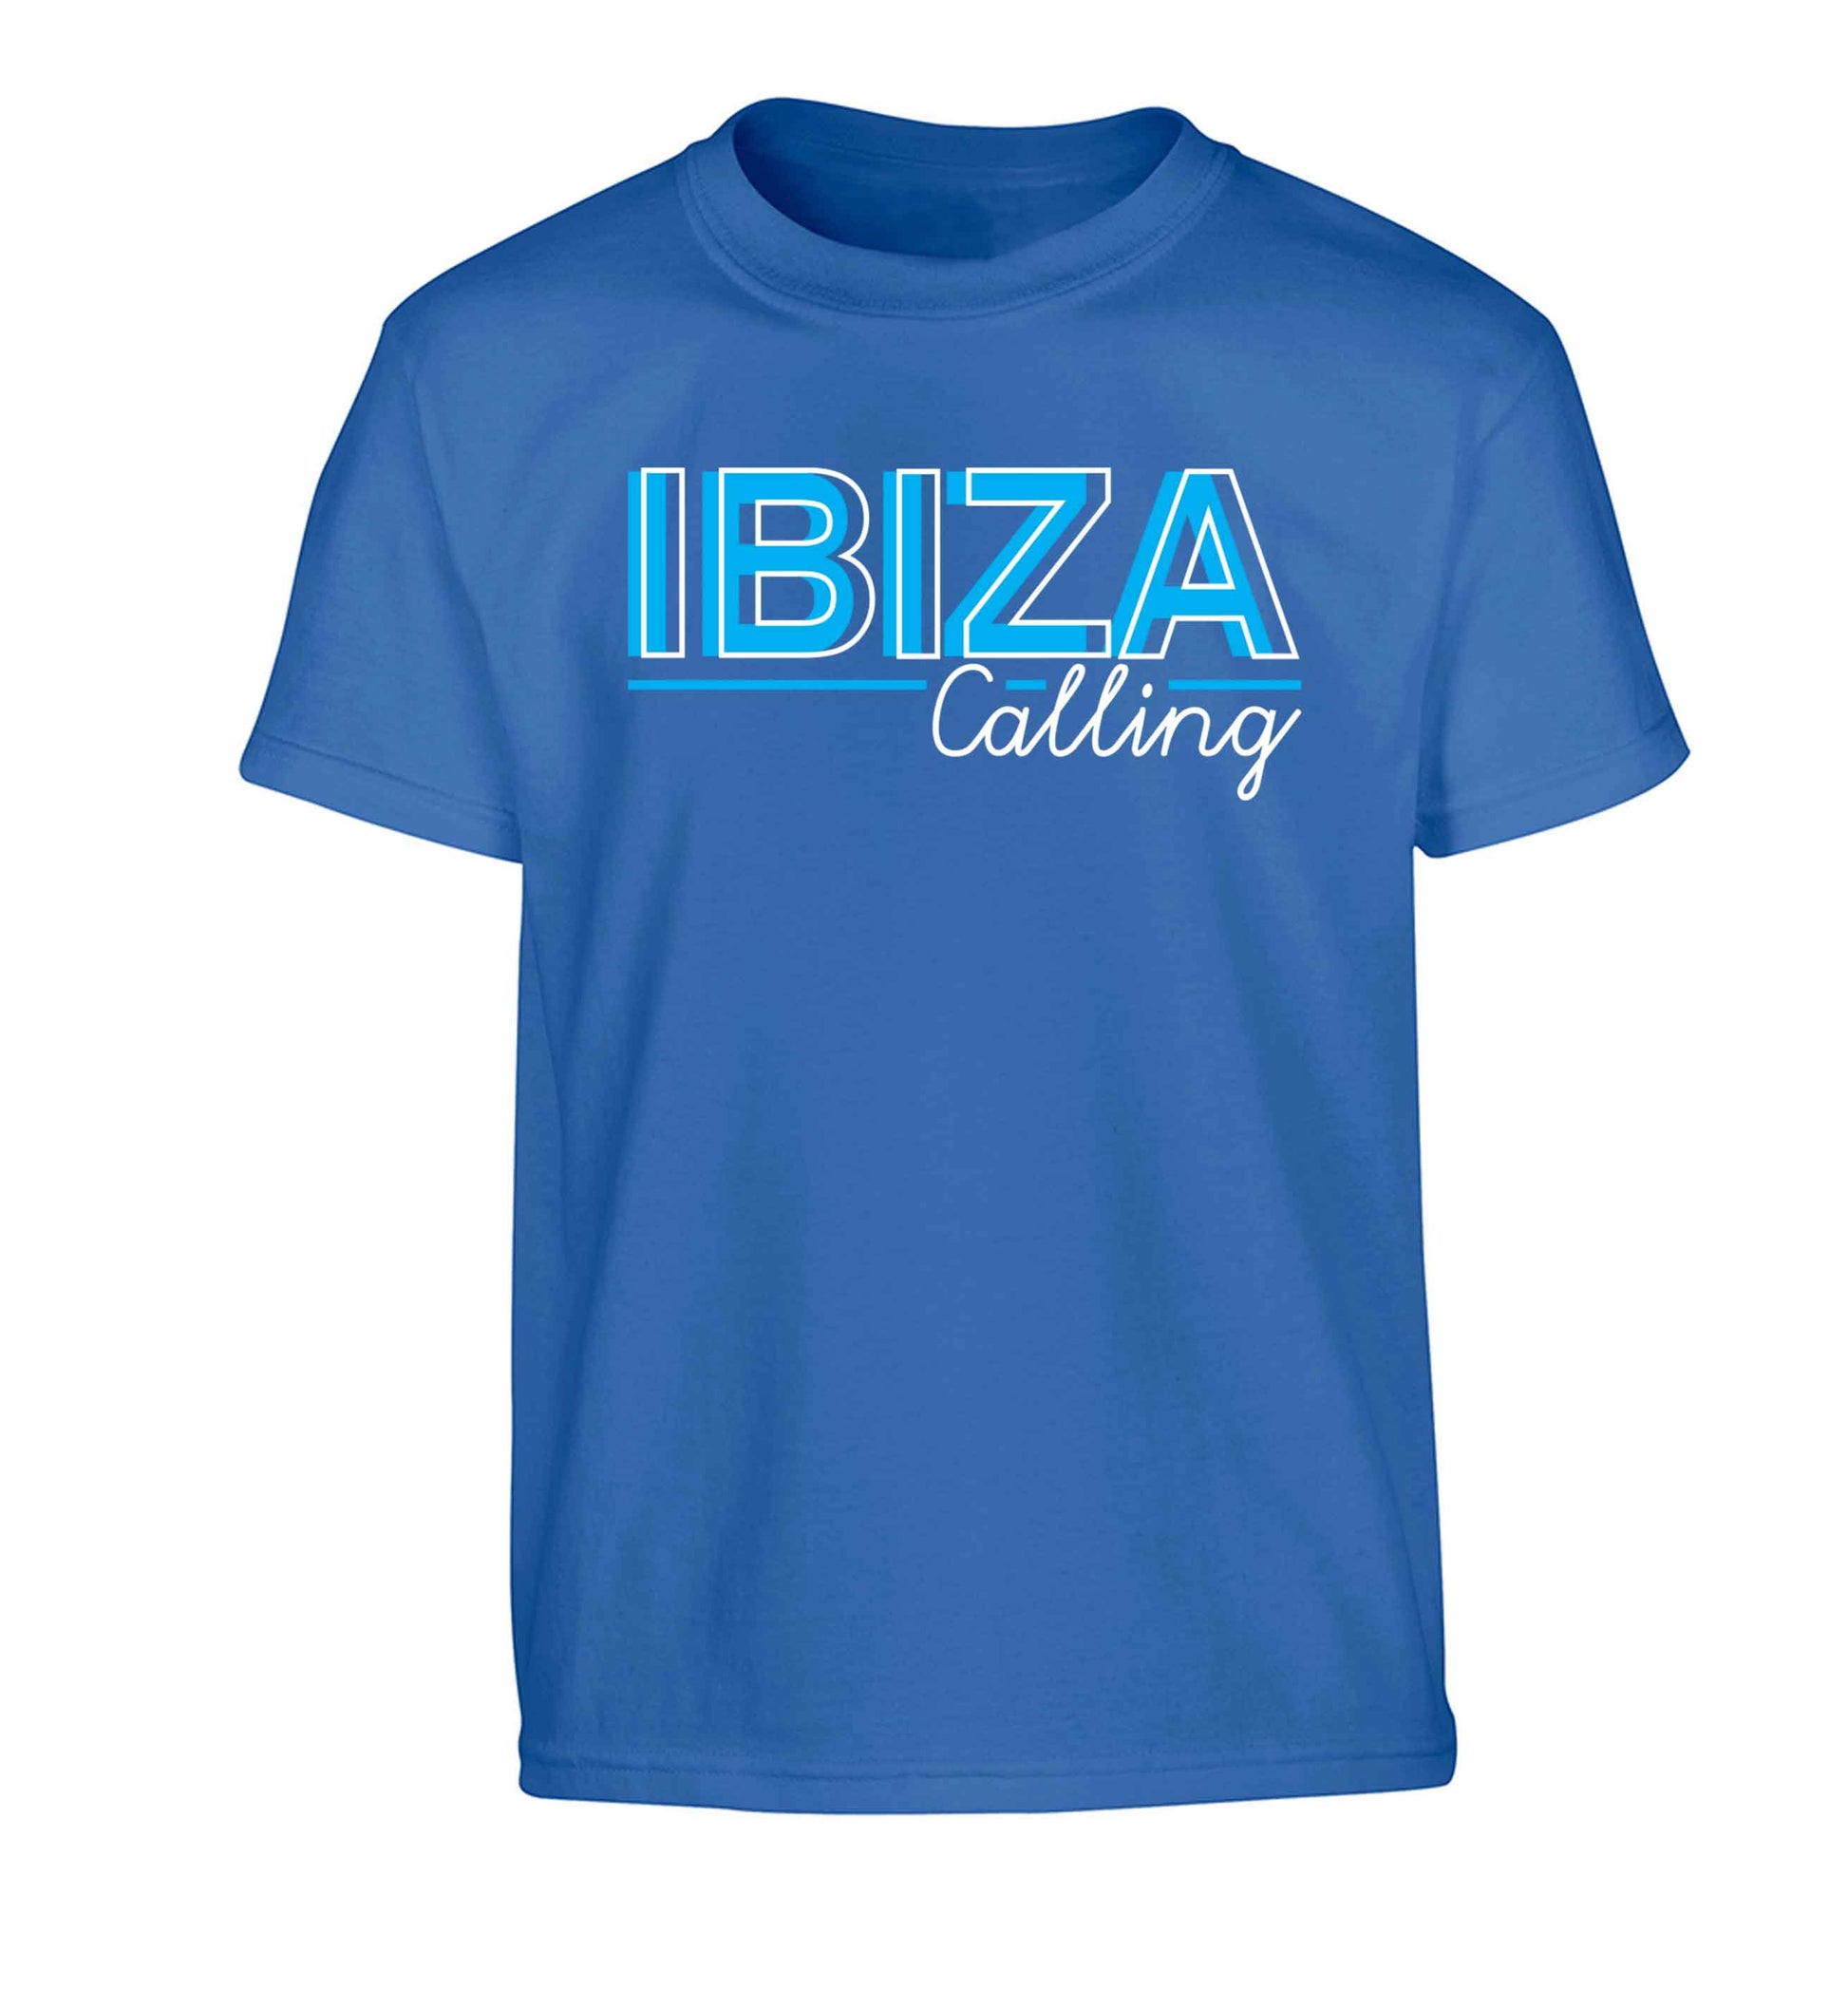 Ibiza calling Children's blue Tshirt 12-13 Years